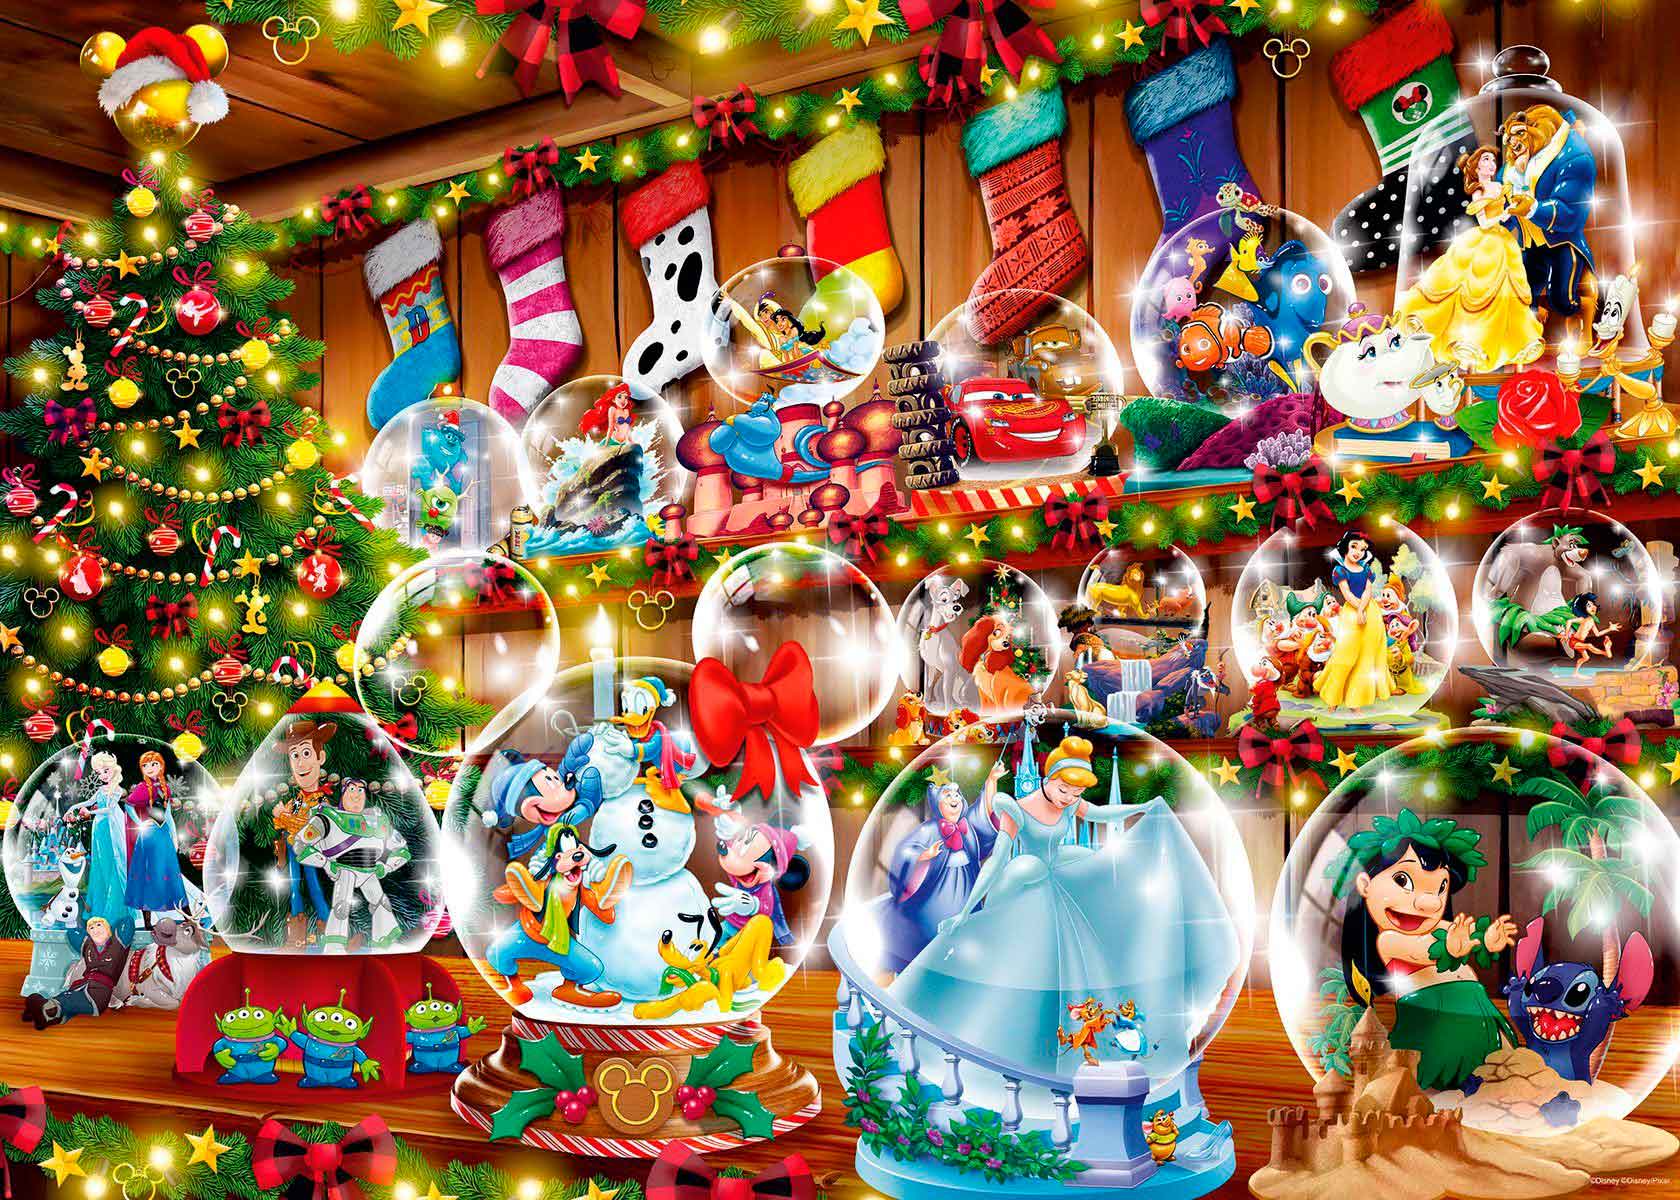 Ravensburger Disney All A bordo para o quebra-cabeça de Natal (1000 peças)